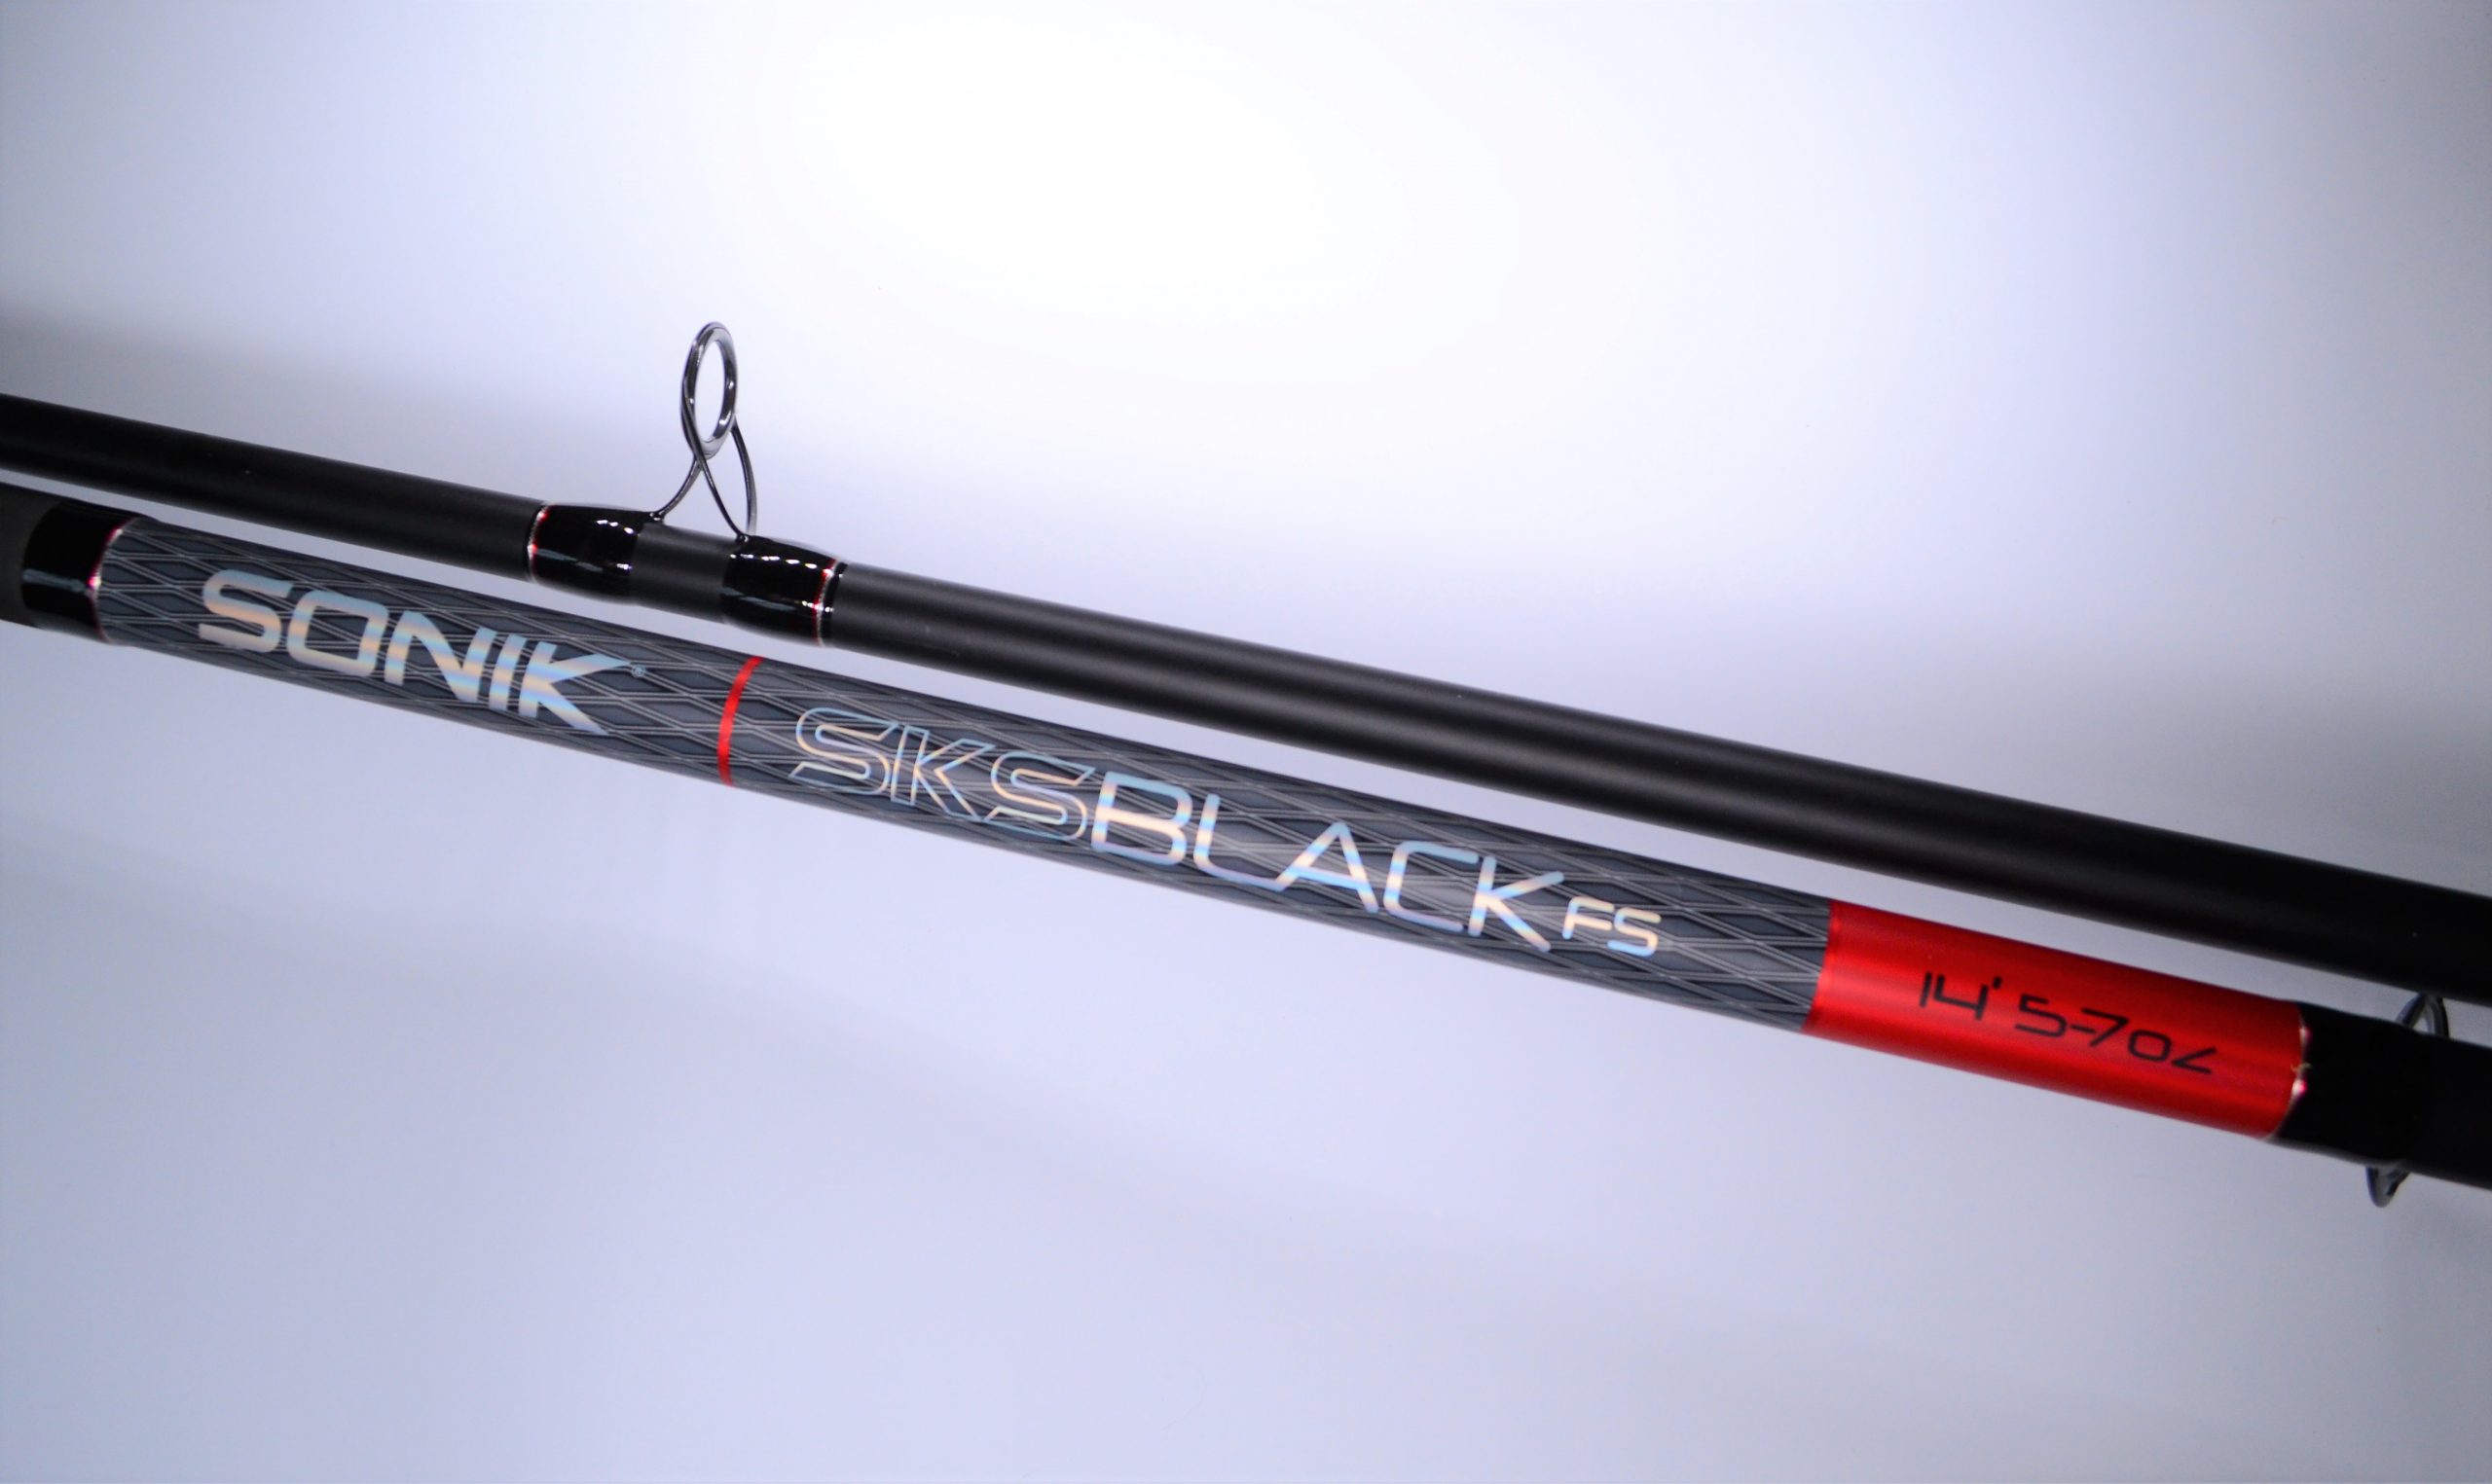 Sonik SKS Black 14ft fs 4-6oz £99.99 (Collection Only